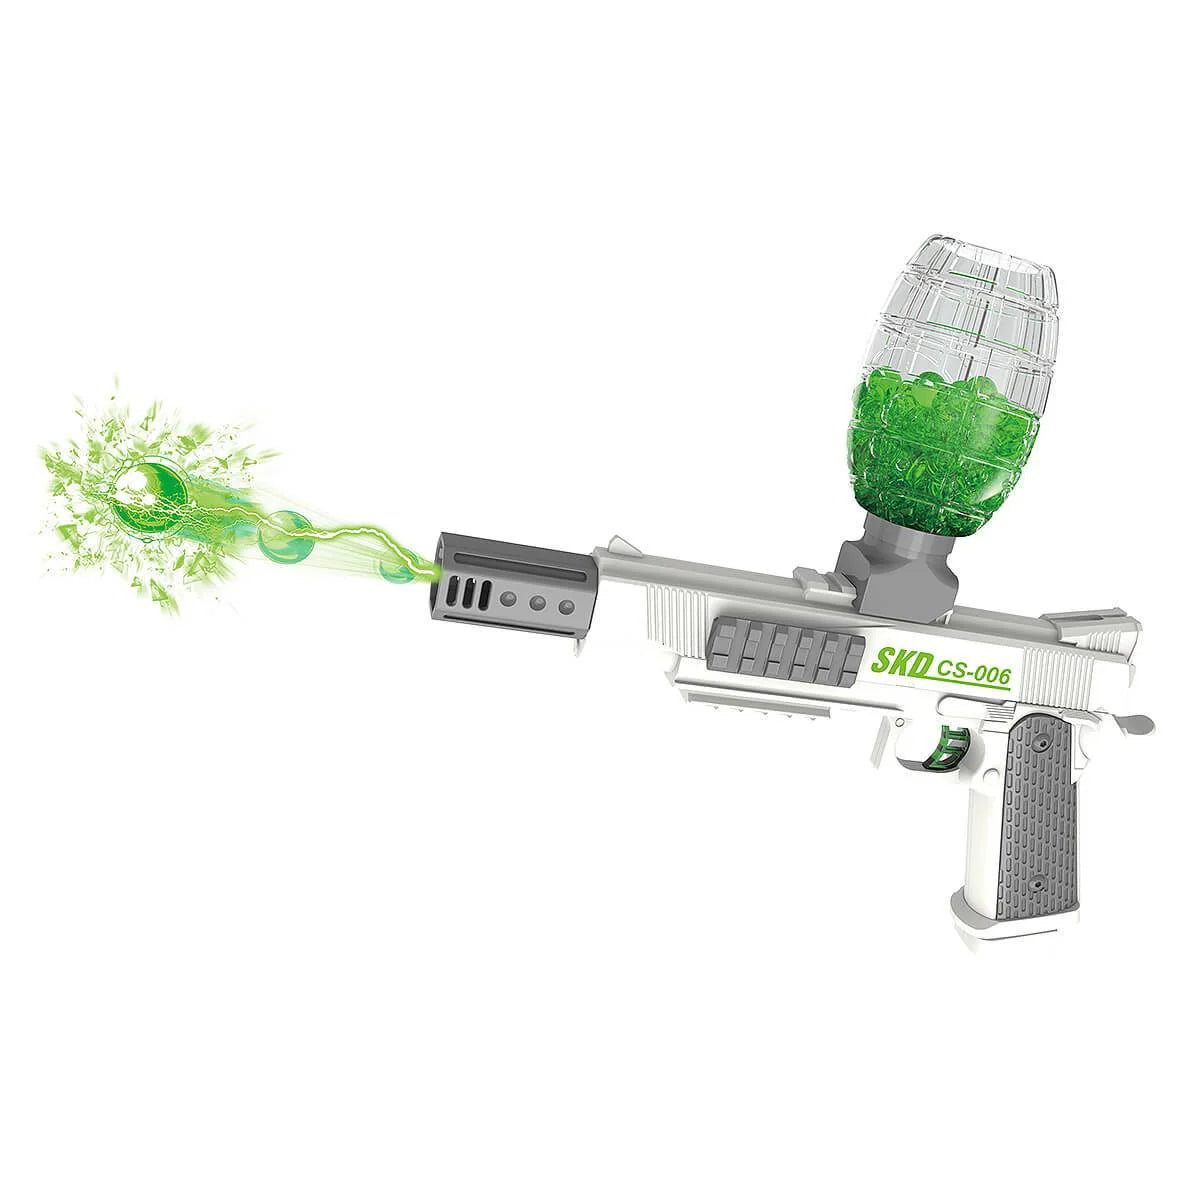 Gel Blaster Toy Gun